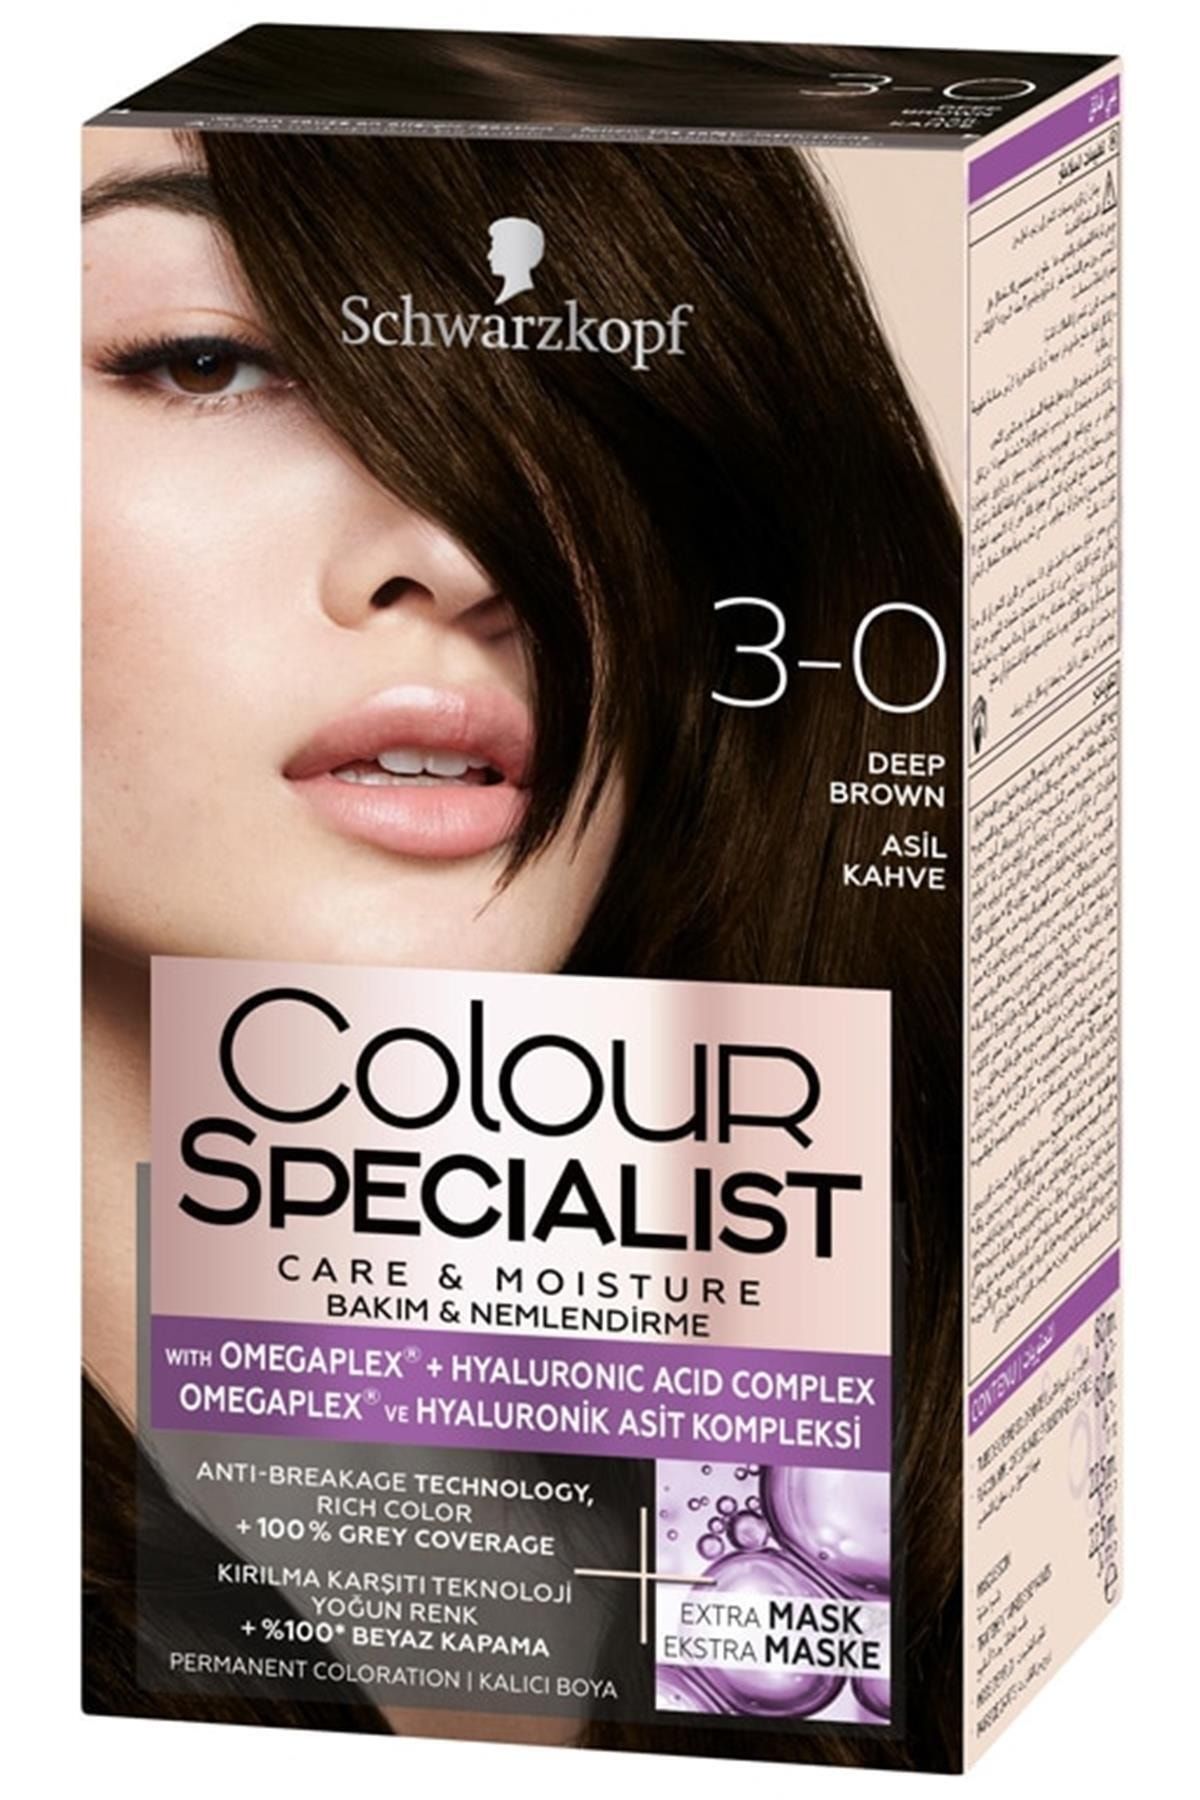 Colour Specialist Marka: Saç Boyası 3.0 Asil Kahve Kategori: Saç Boyası